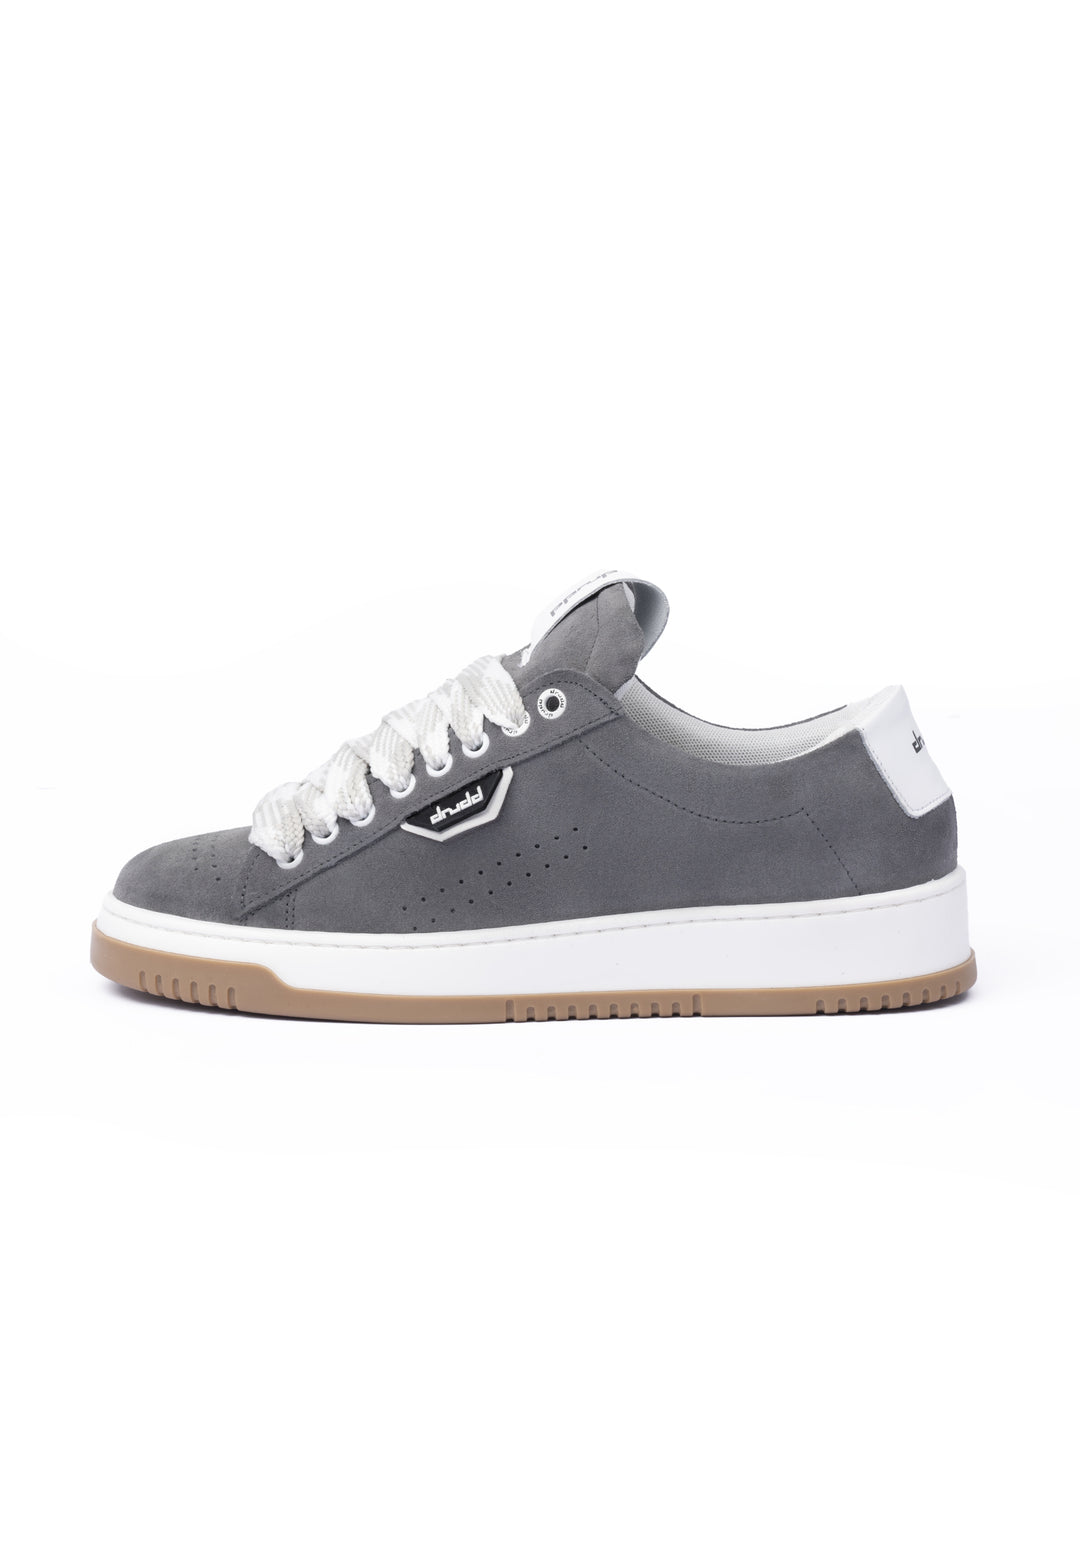 Sneakers camoscio grigio - D-Claude